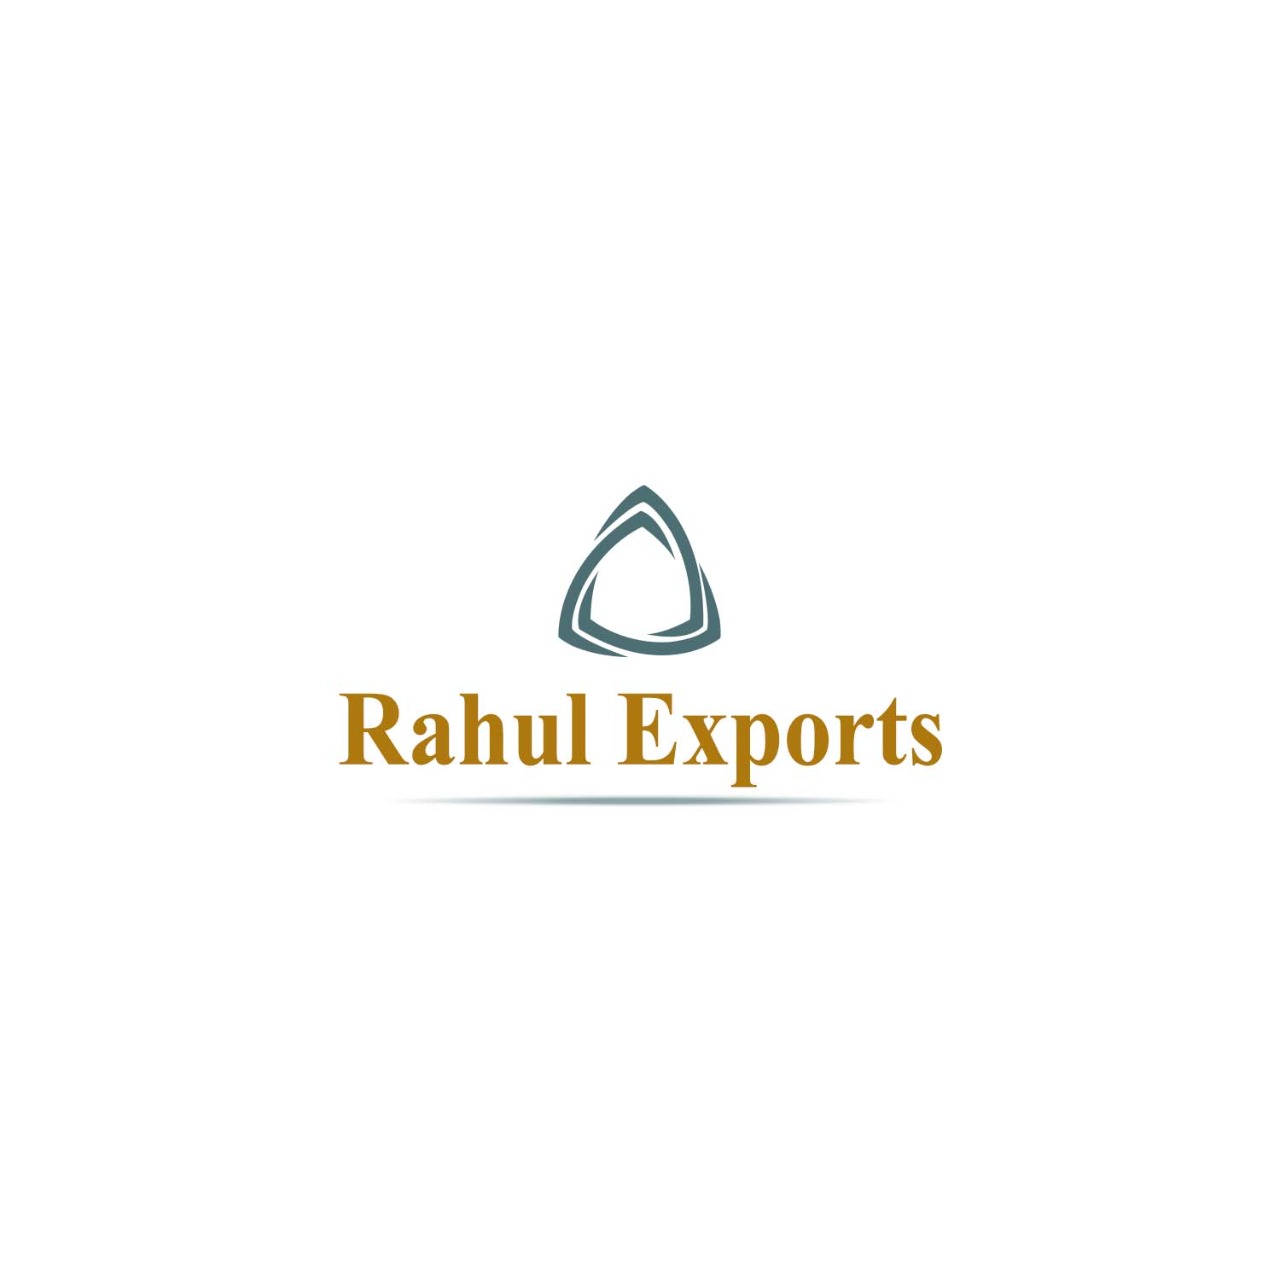 Rahul Name Logo 🔥 comment your name #viral #trending #logodesign #artist  #art 🚩🚩🚩🚩 - YouTube